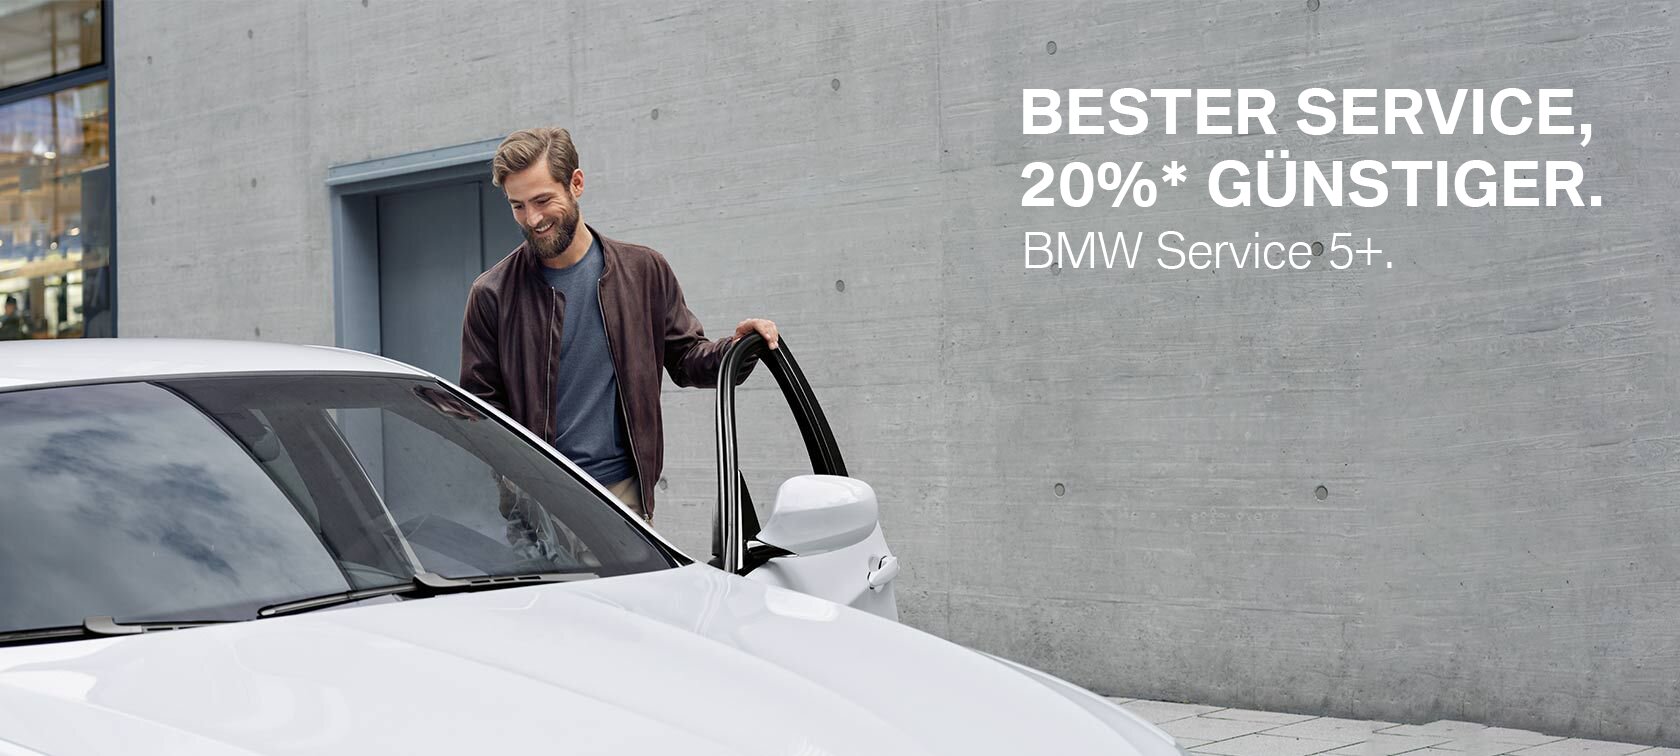 BMW Service 5+ - Unsere Angebote